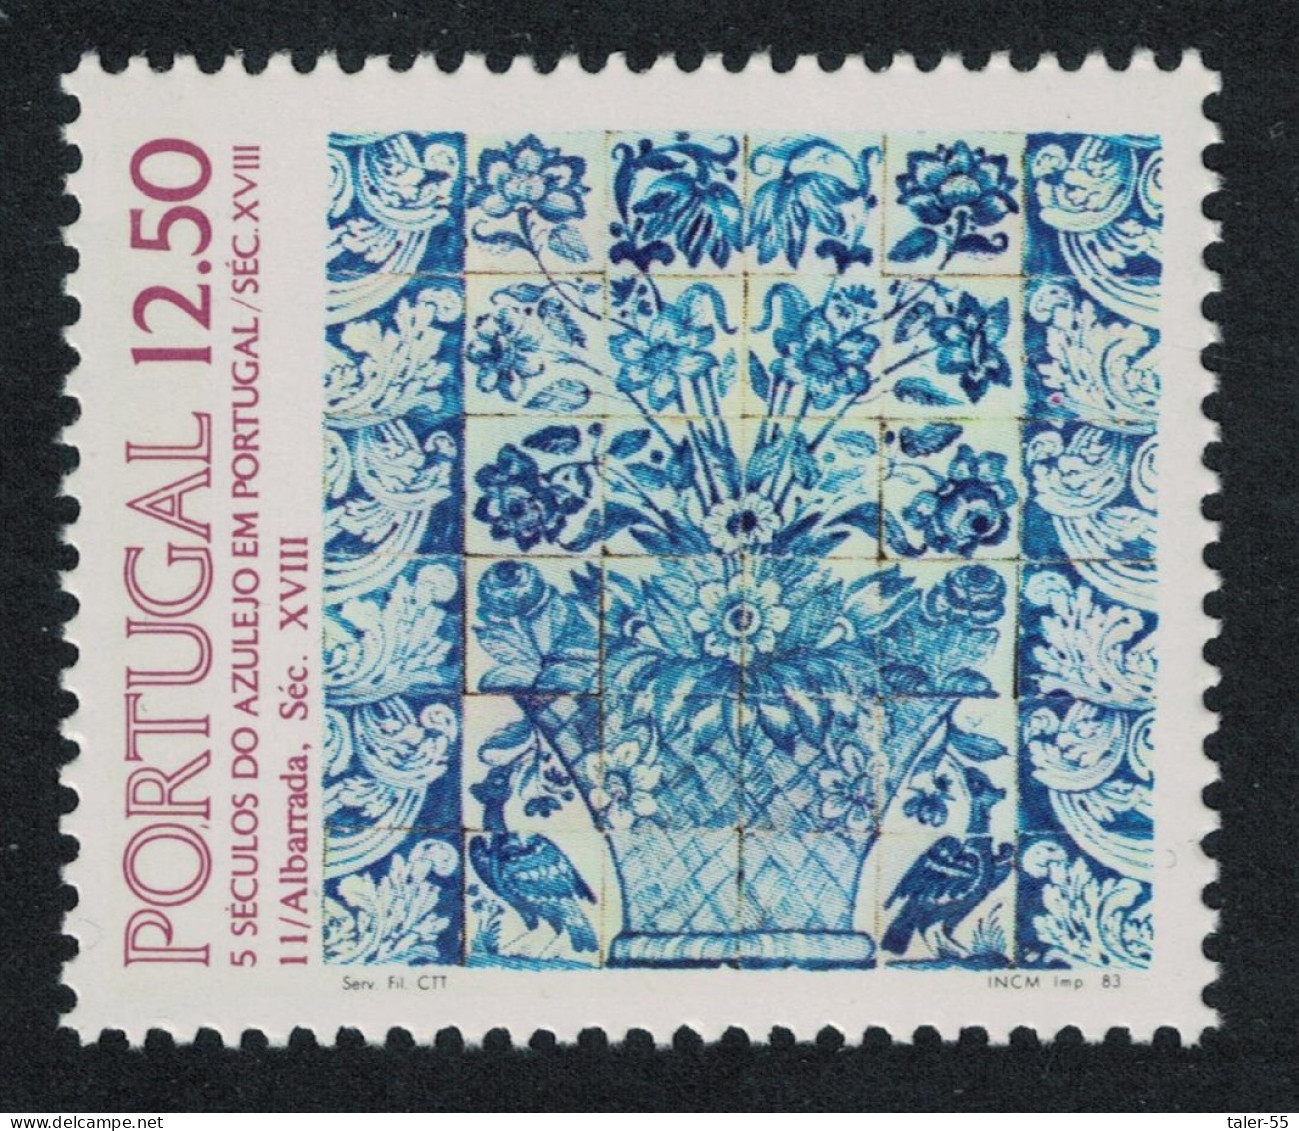 Portugal Tiles 11th Series 1983 MNH SG#1935 - Ungebraucht